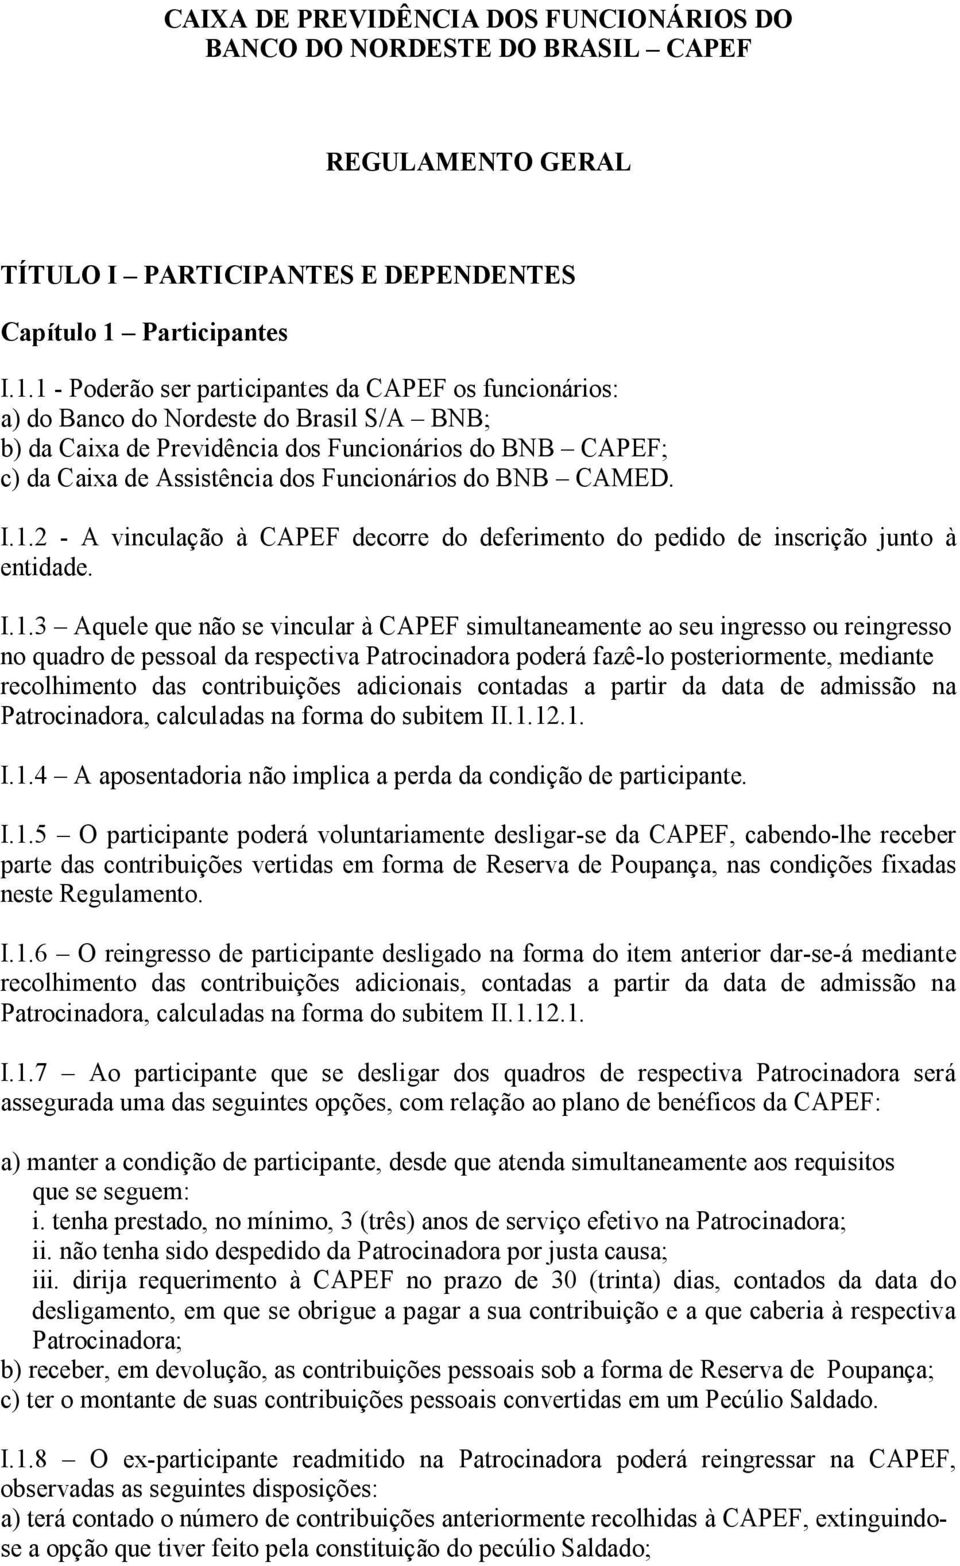 1 - Poderão ser participantes da CAPEF os funcionários: a) do Banco do Nordeste do Brasil S/A BNB; b) da Caixa de Previdência dos Funcionários do BNB CAPEF; c) da Caixa de Assistência dos